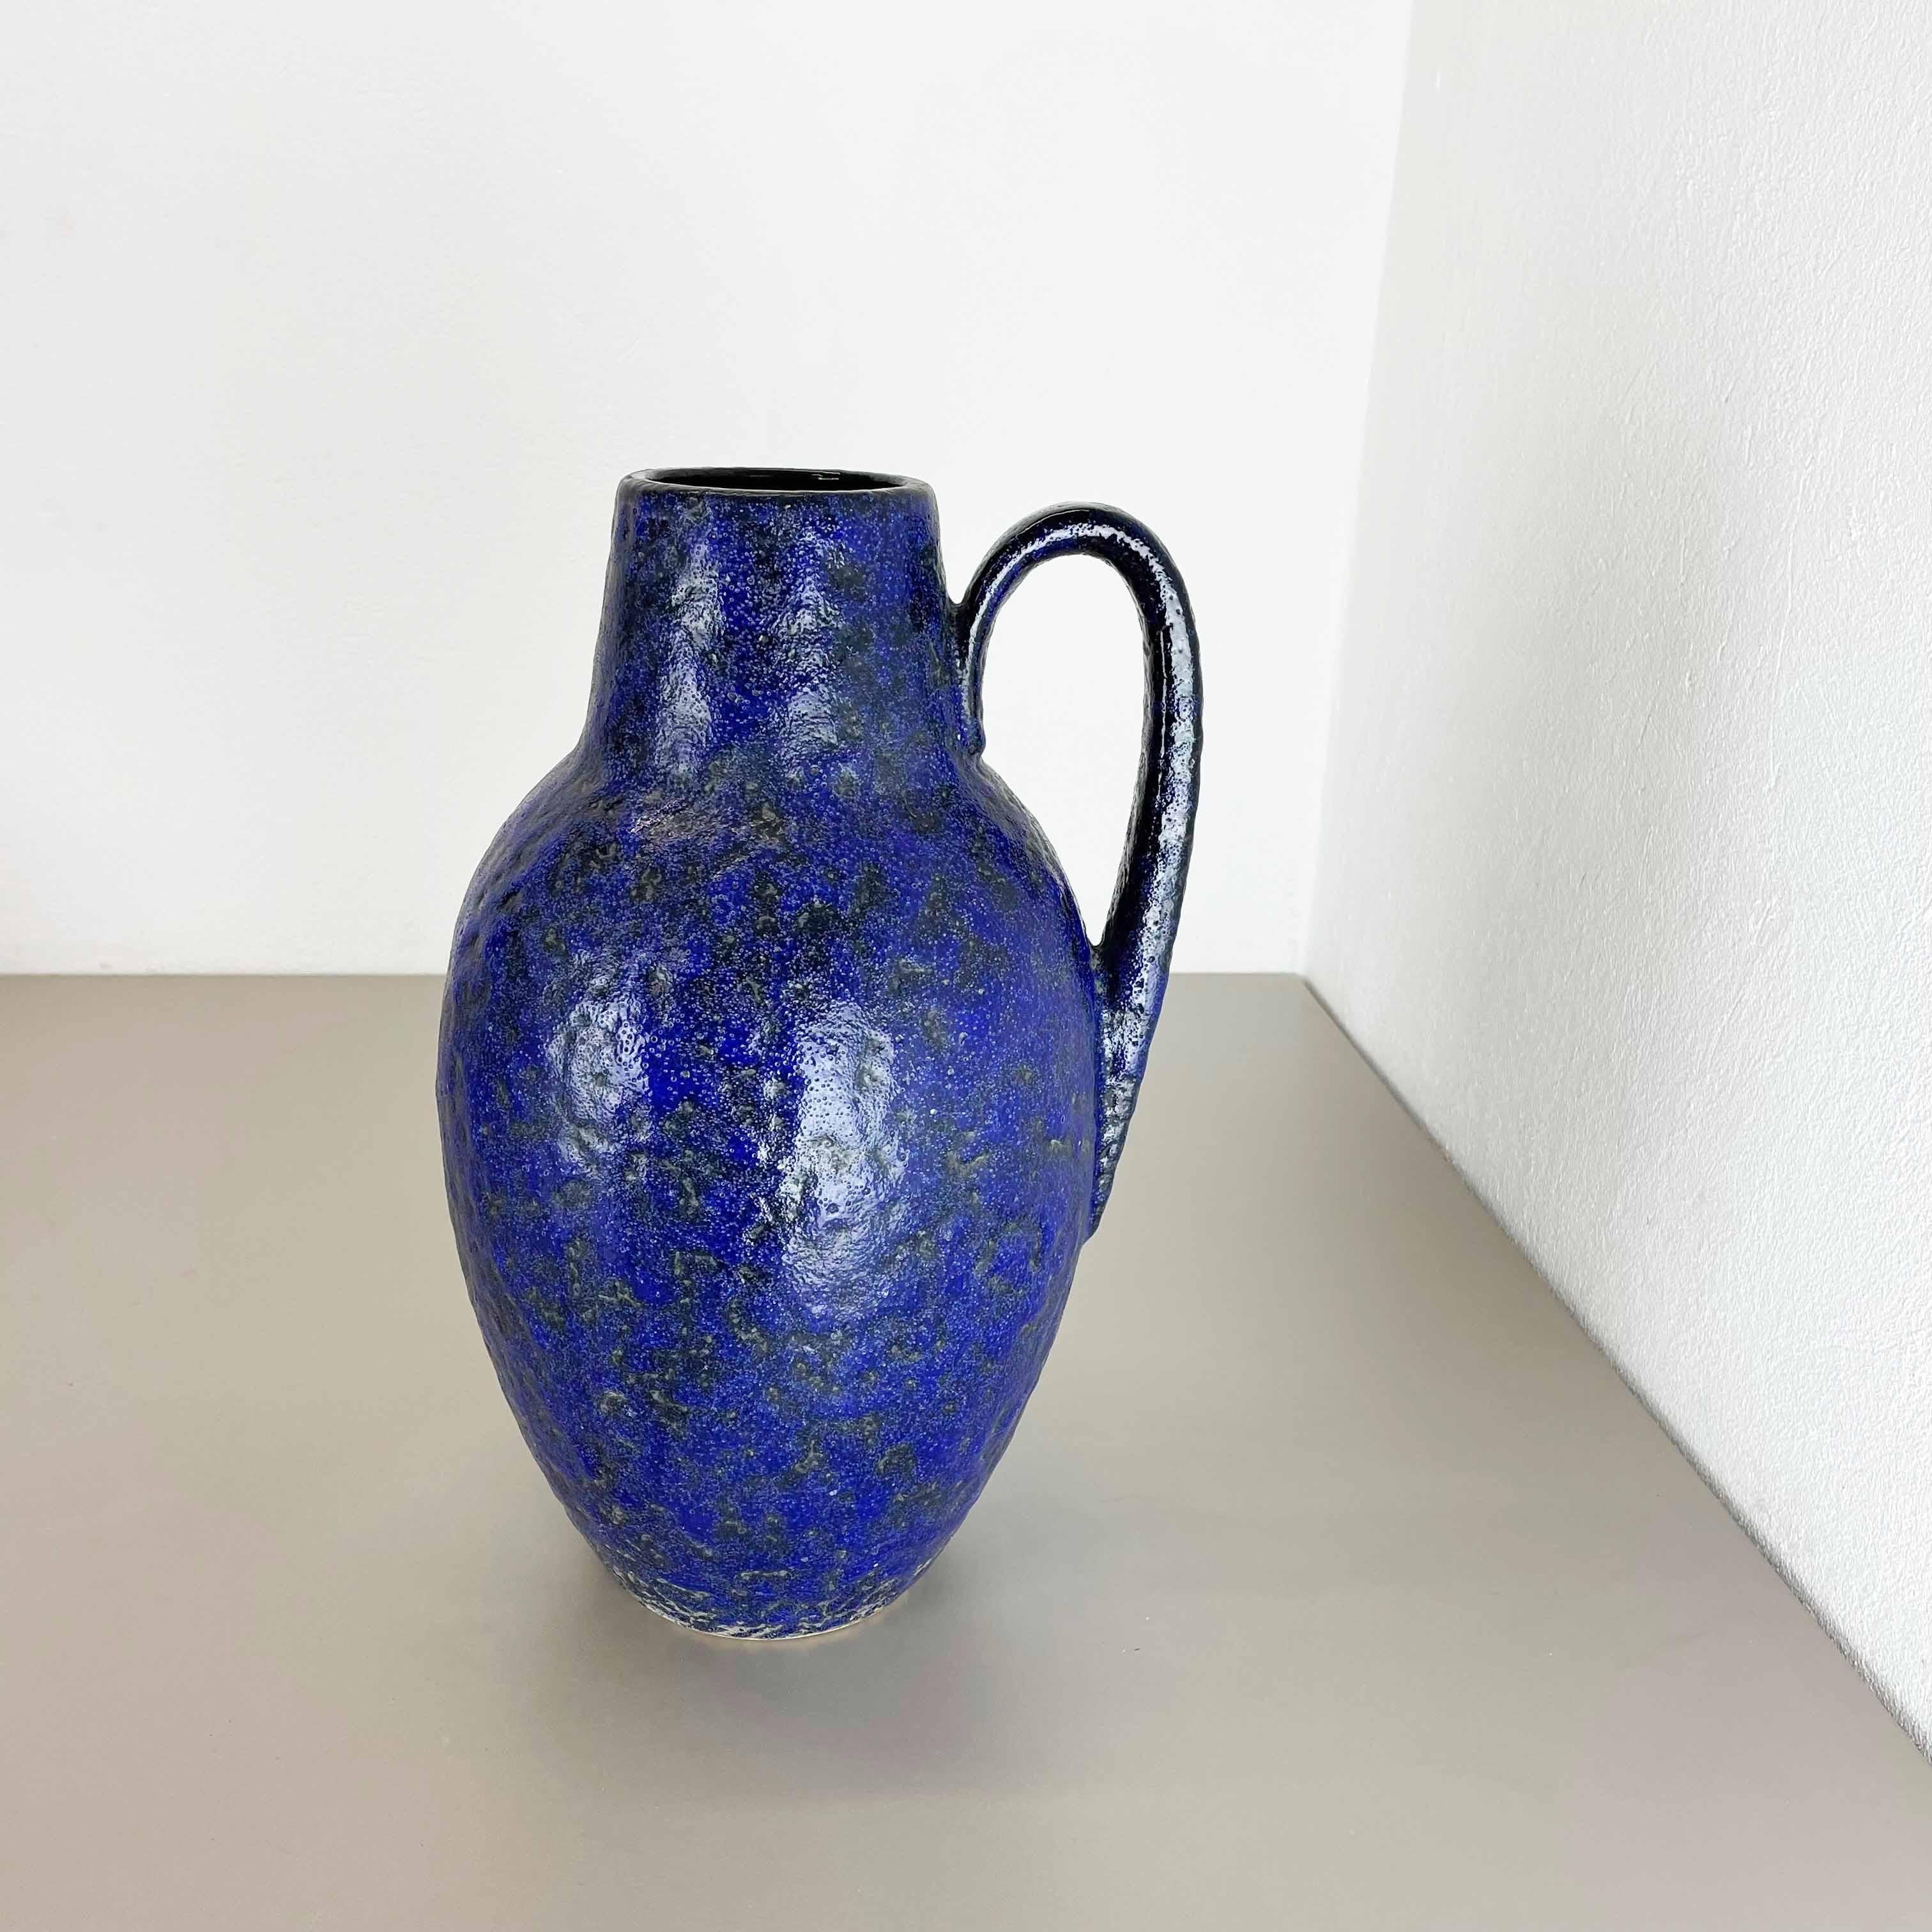 Article :

Vase d'art en lave grasse, glaçure lourde brutaliste


Producteur :

Scheurich, Allemagne



Décennie :

1970s




Ce vase vintage original a été produit dans les années 1970 en Allemagne. Il est réalisé en poterie